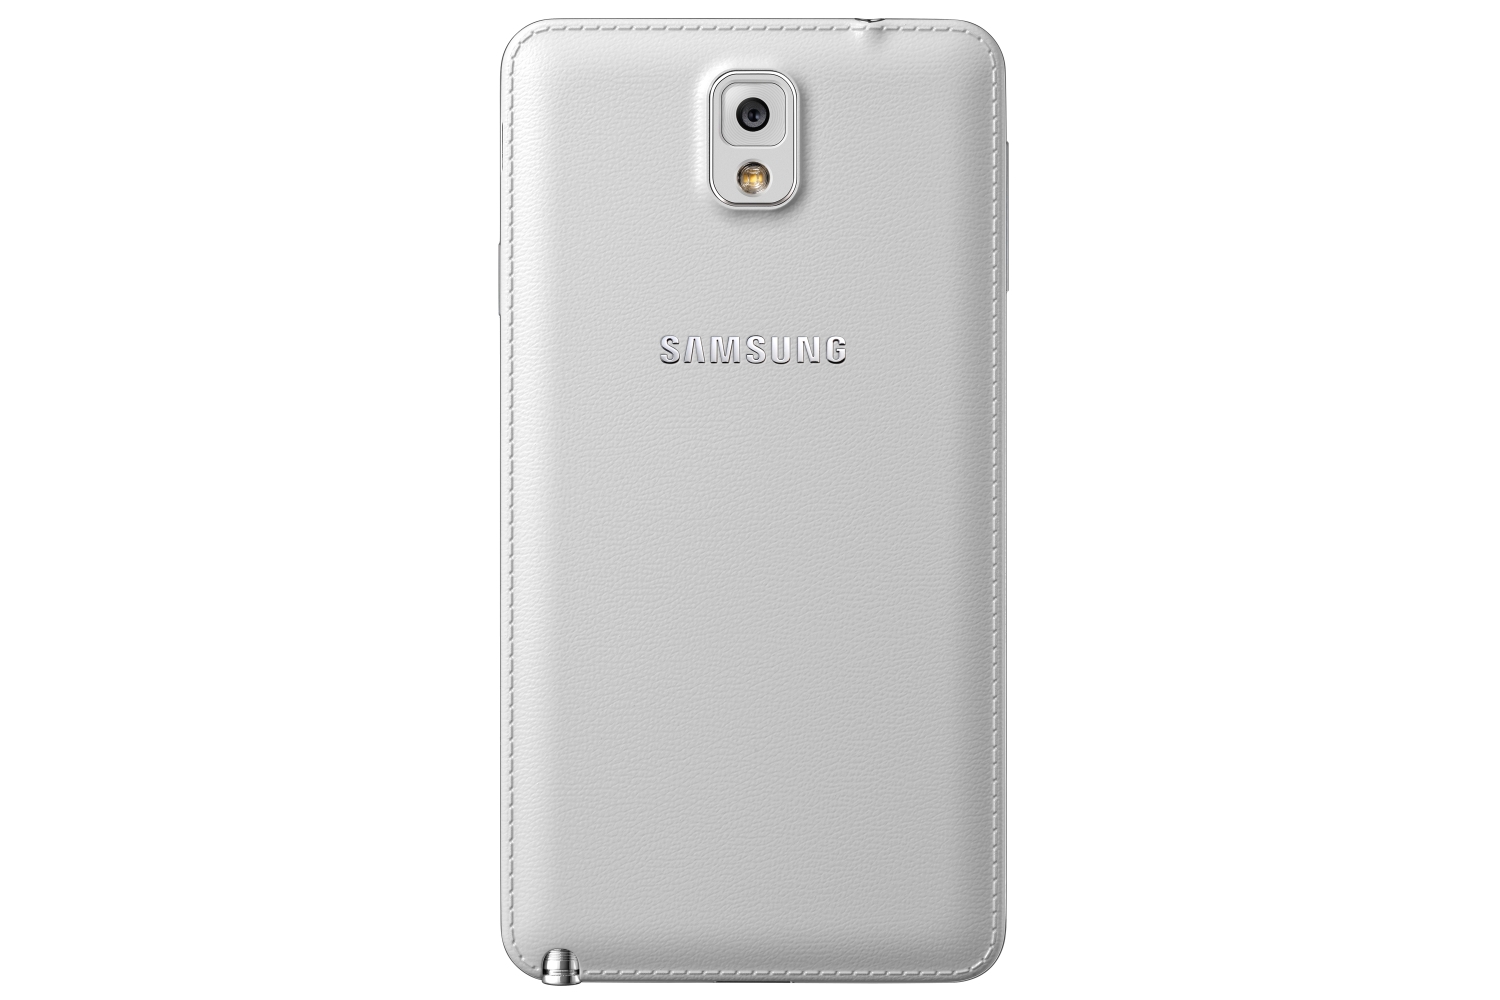 Samsung Galaxy Note 3 White. Samsung Galaxy Note 3 белый. Note 3 32